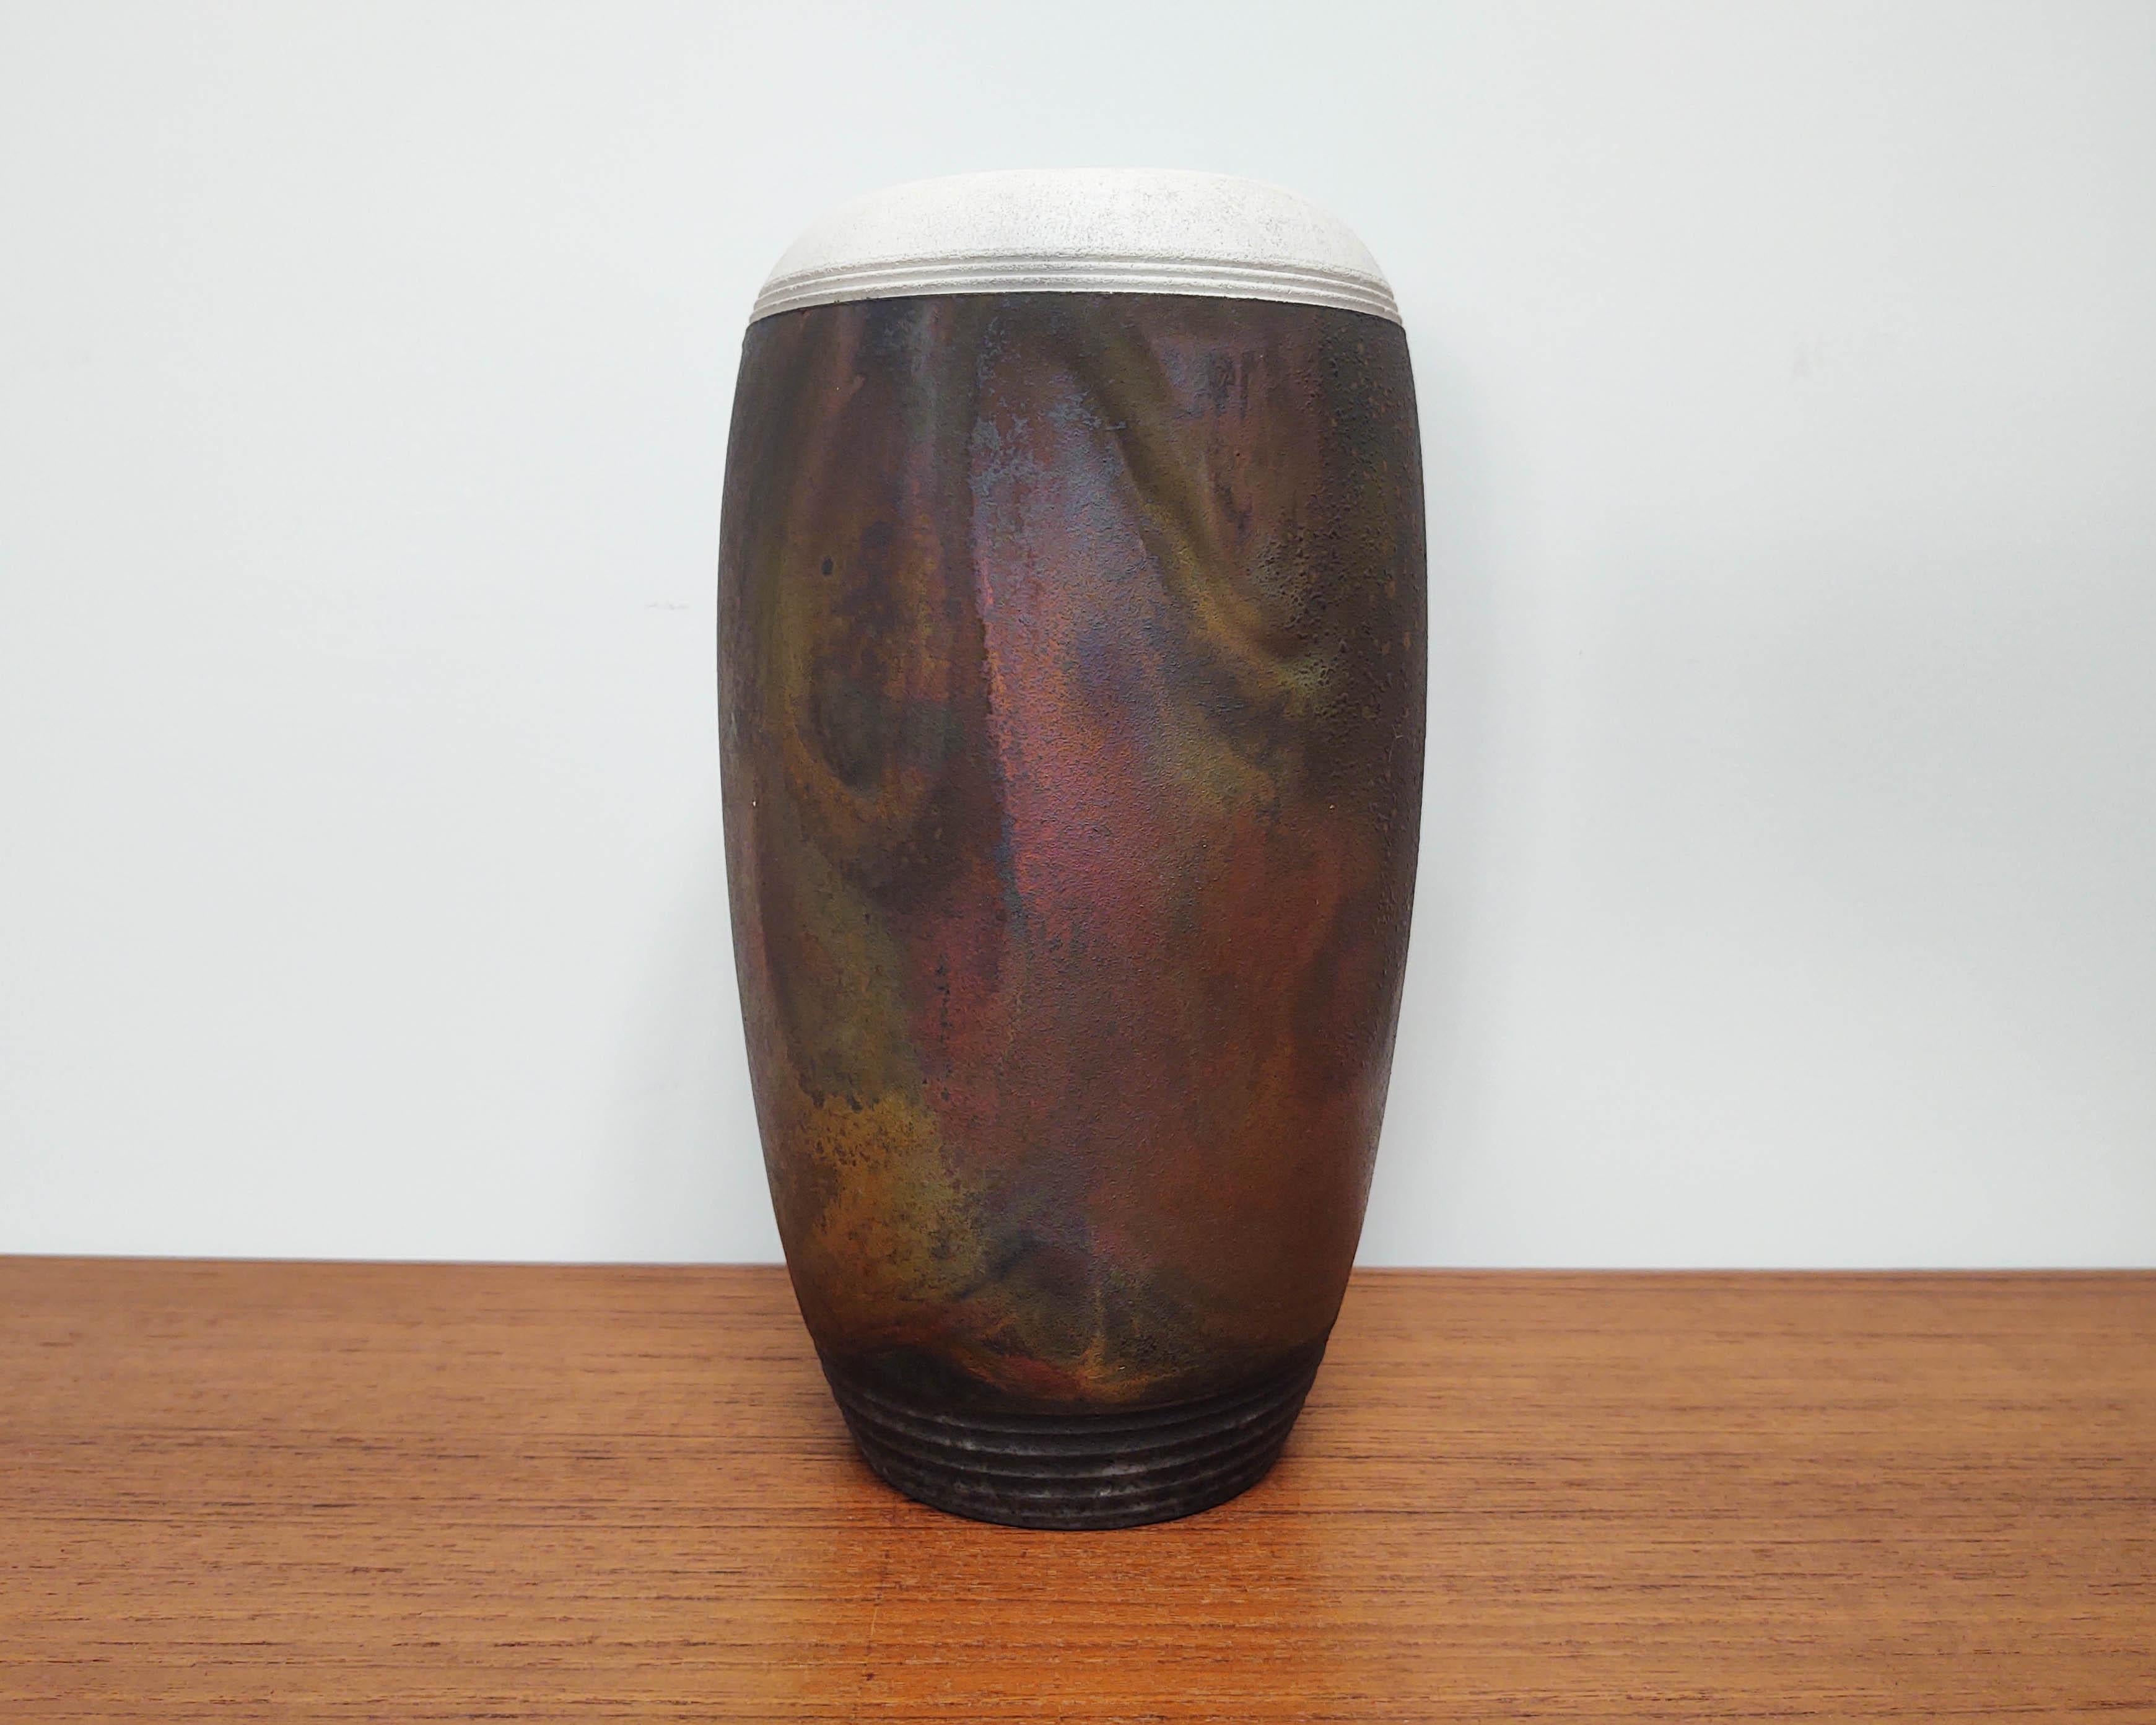 Vase / récipient oblong en céramique noire avec une couche d'oxyde arc-en-ciel tourbillonnante typique de la cuisson raku. Le bord est blanc contrastant et le pied est sculpté en noir. Le vitrage/oxyde n'est pas étanche. La signature n'est pas très